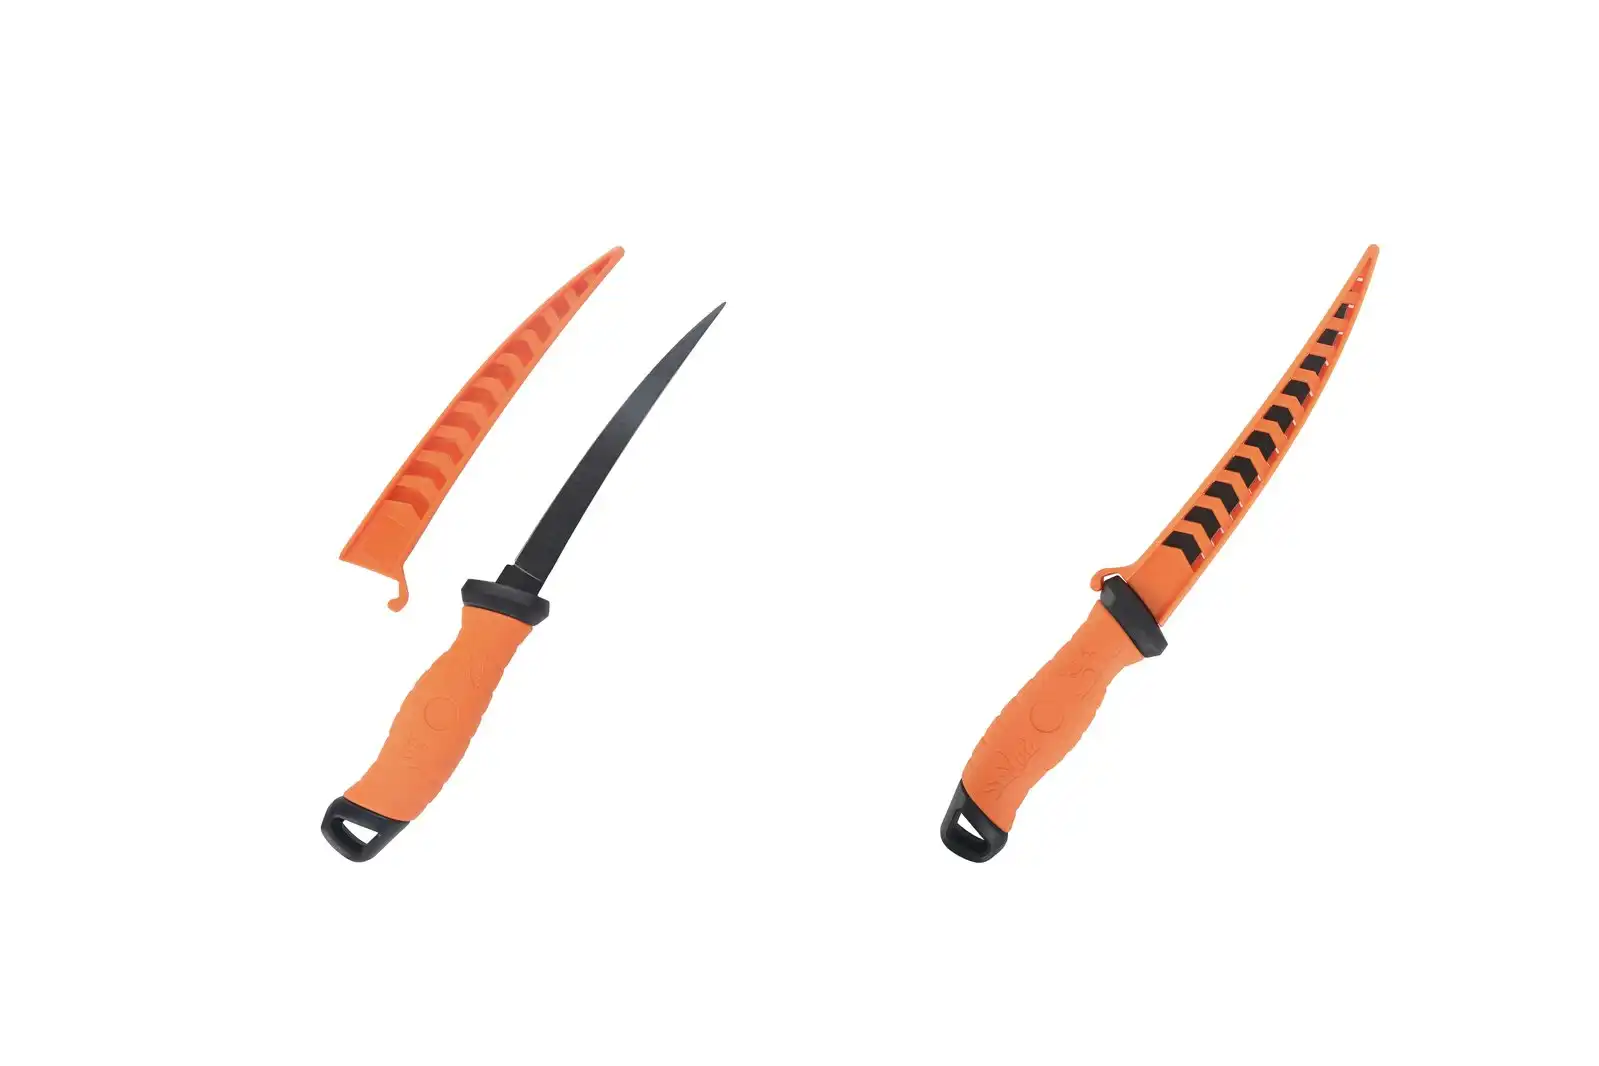 Fishteck 20cm Pro Series Sharp Fillet Knife w/ Sheath Cover Fish/Meat Orange